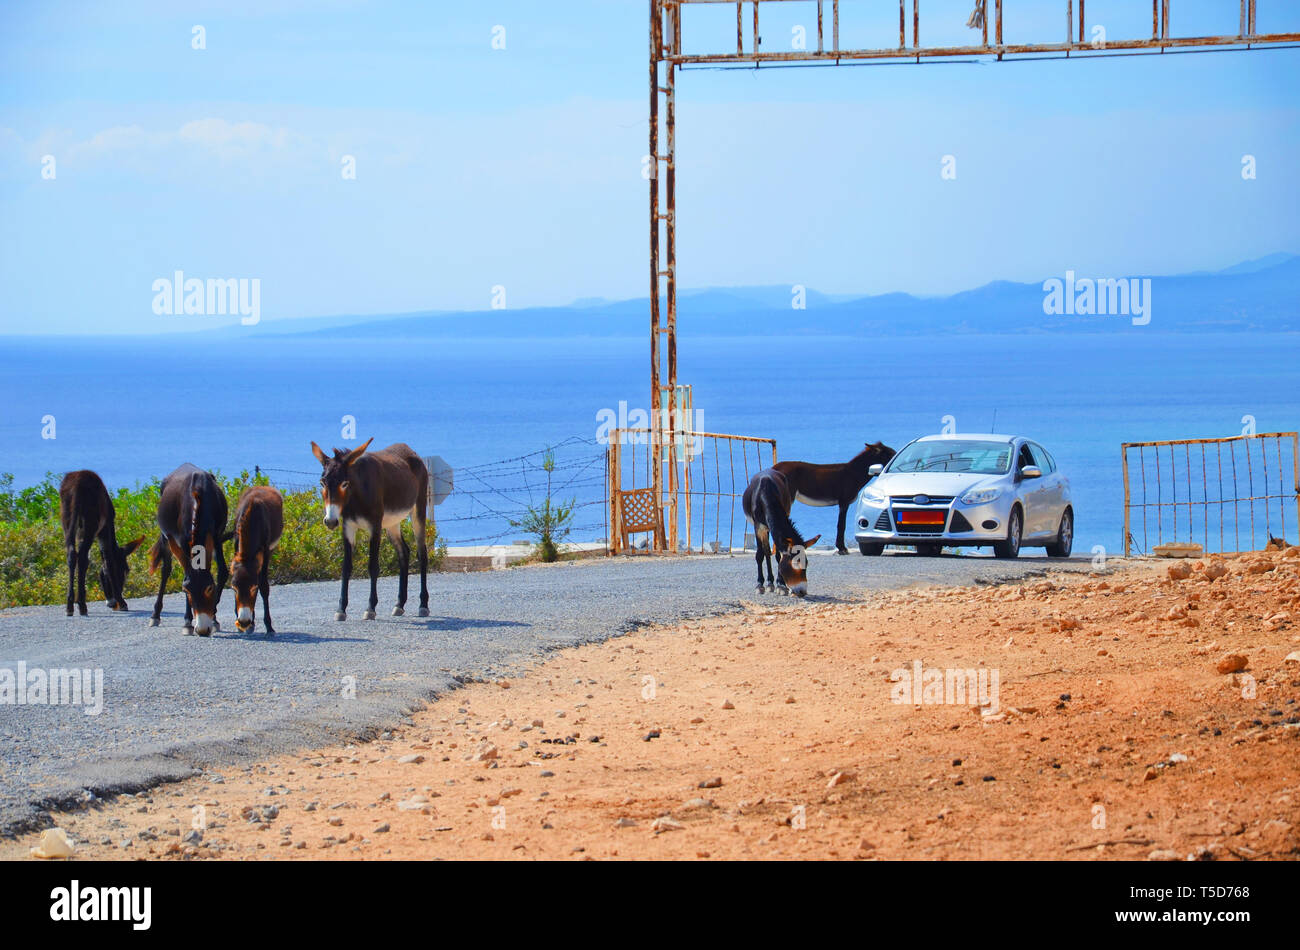 Wilde Esel auf der Straße rund um das Auto, dass vorbei ist. Einer der Esel hat seinen Kopf in ein Auto. In Karpas Halbinsel, türkischen Nordzypern. Diese niedlichen Tiere sind Attraktion der Gegend. Stockfoto